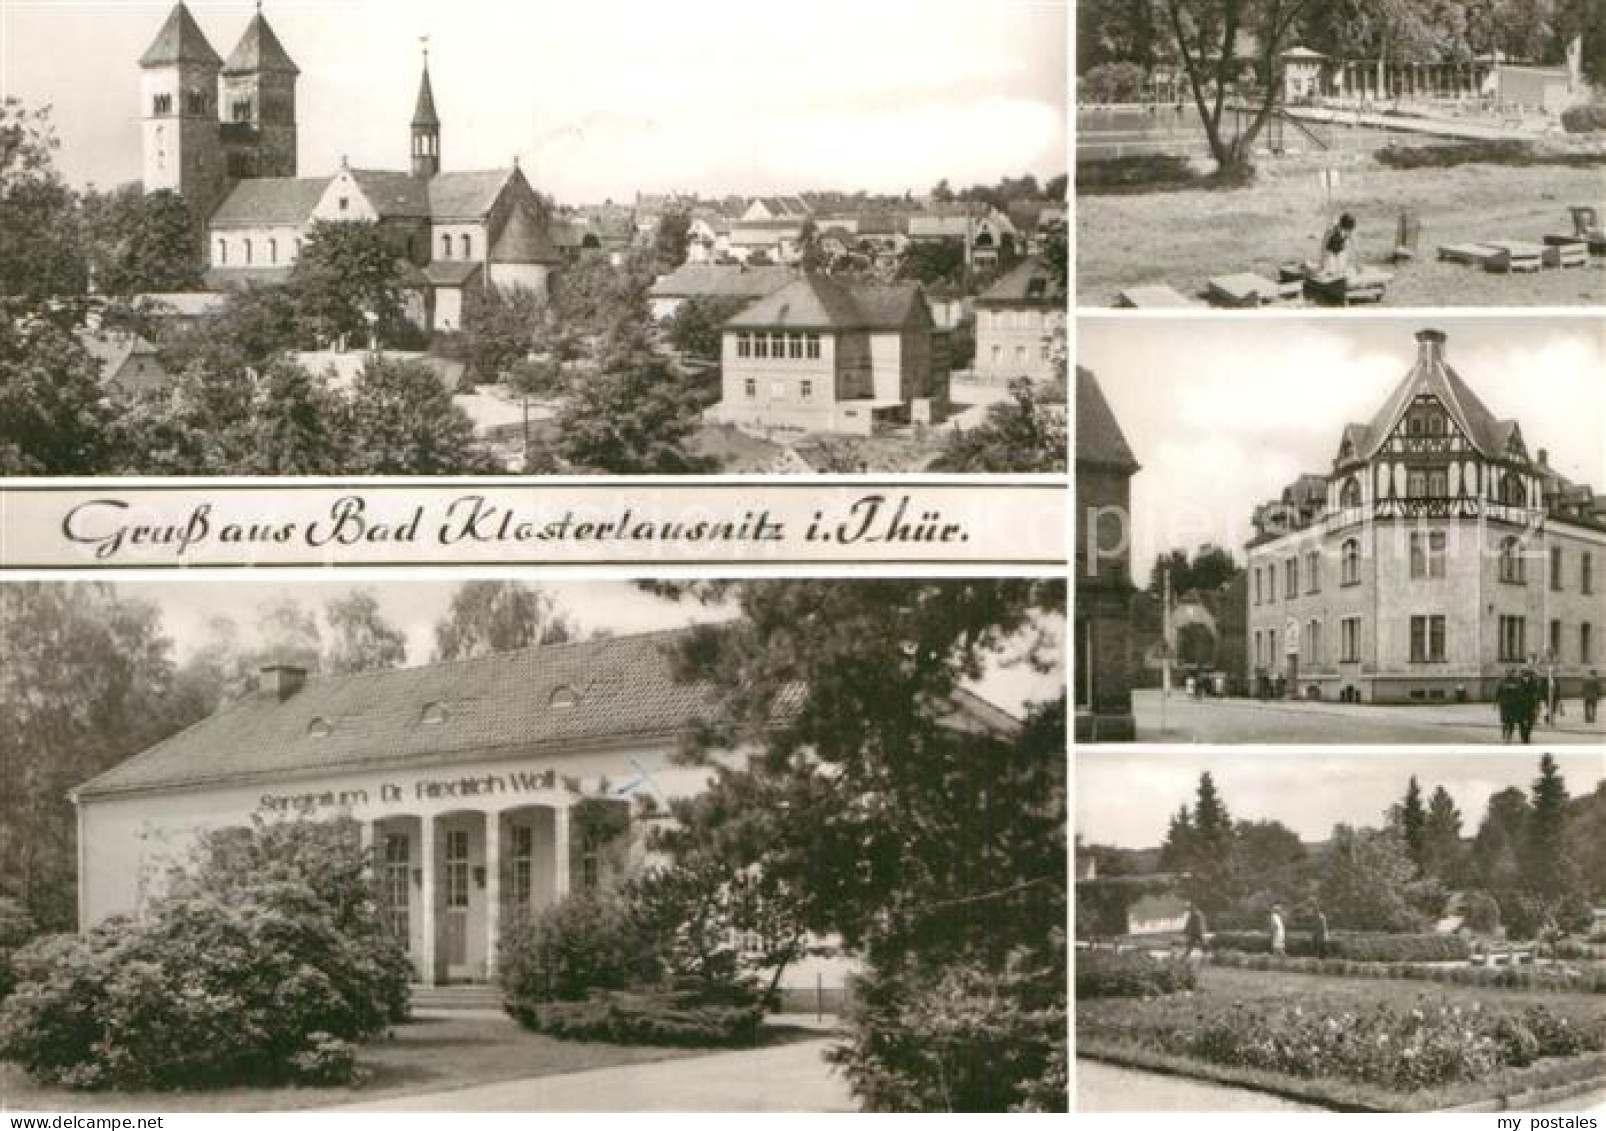 72917464 Bad Klosterlausnitz Klosterkirche Sanatorium Dr. Friedrich Wolf Schwimm - Bad Klosterlausnitz